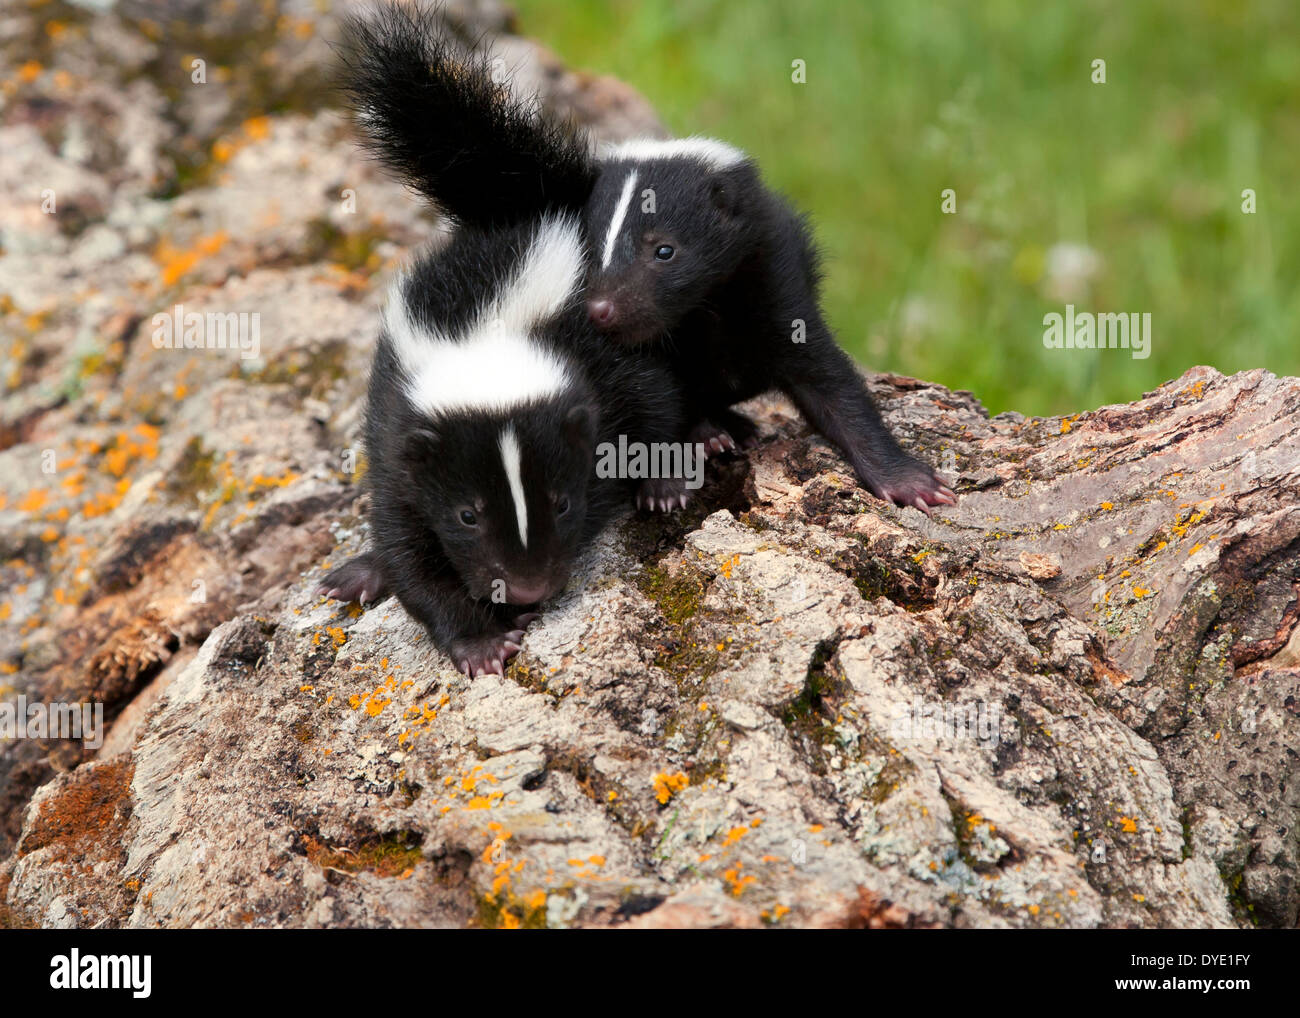 Baby skunks snuggling Stock Photo